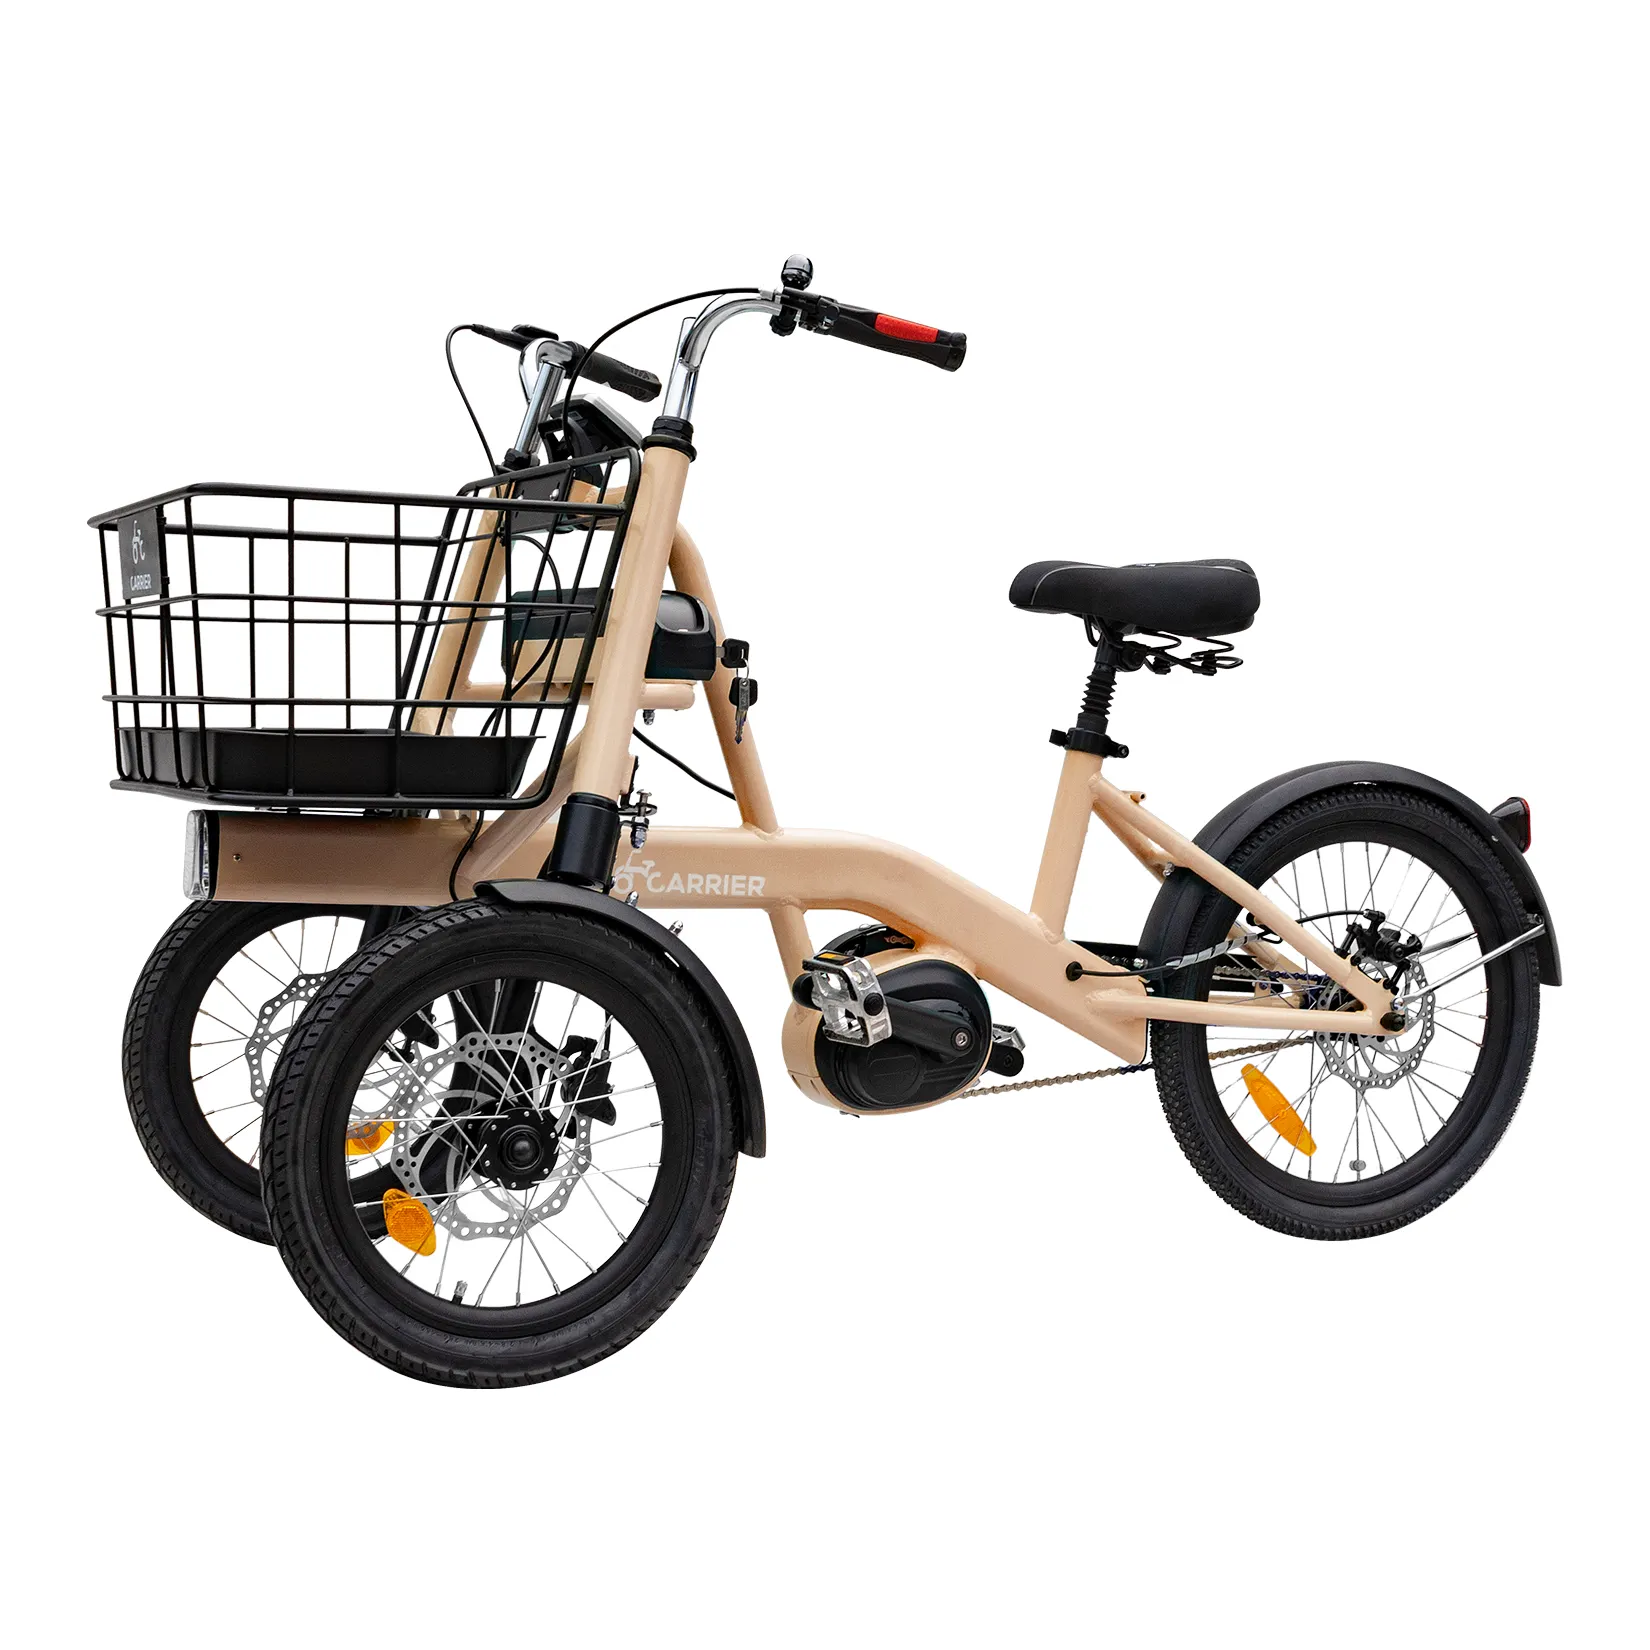 Novo motor adulto de carga pesada para triciclos elétricos de três rodas, bicicleta barata para idosos